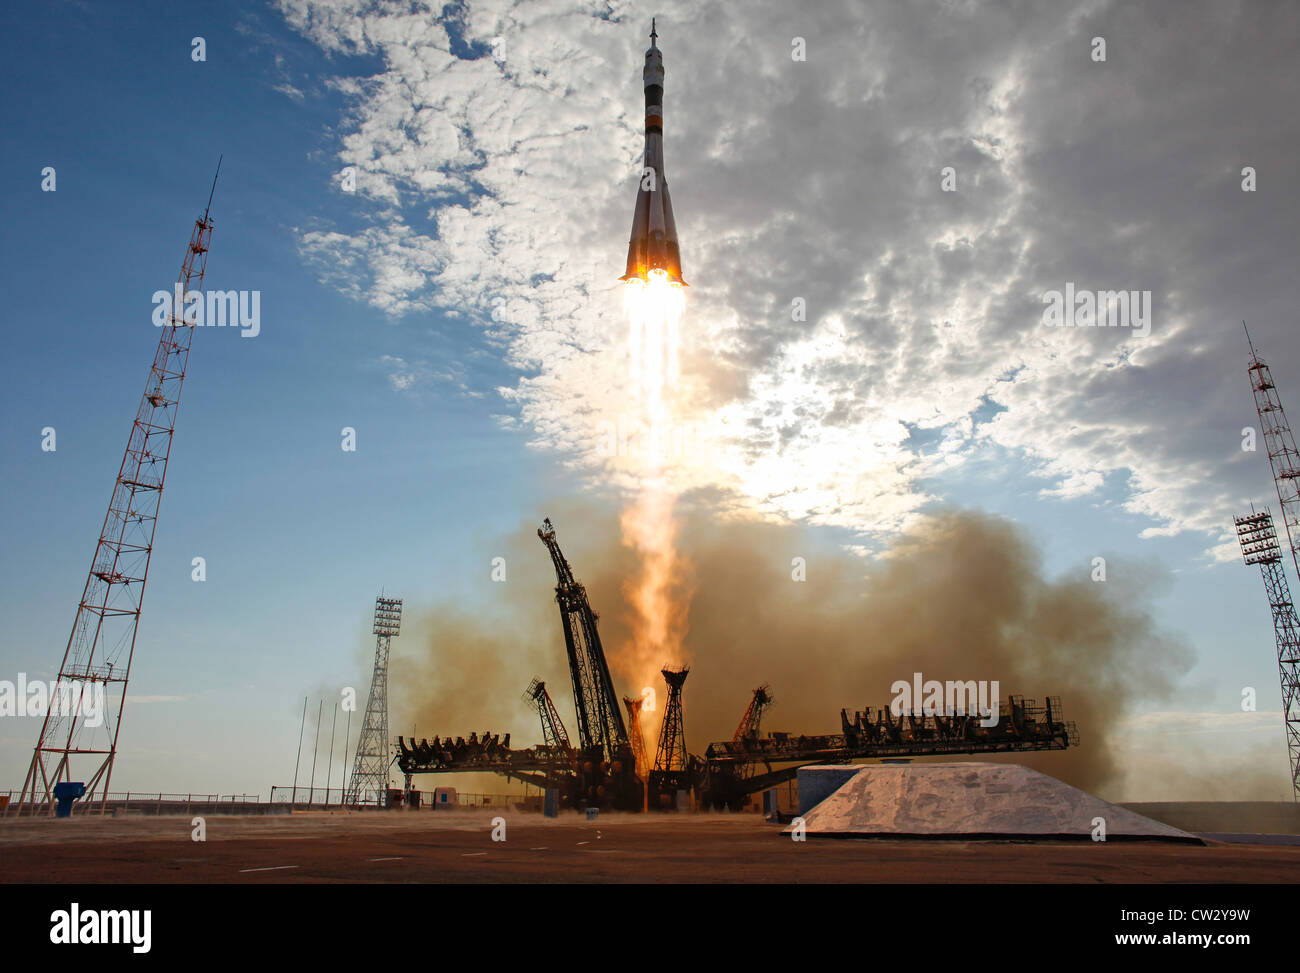 Soyuz TMA-05M los lanzamientos de cohetes desde el cosmódromo de Baikonur, en Kazajstán, llevando la expedición 32 a la Estación Espacial Internacional Foto de stock